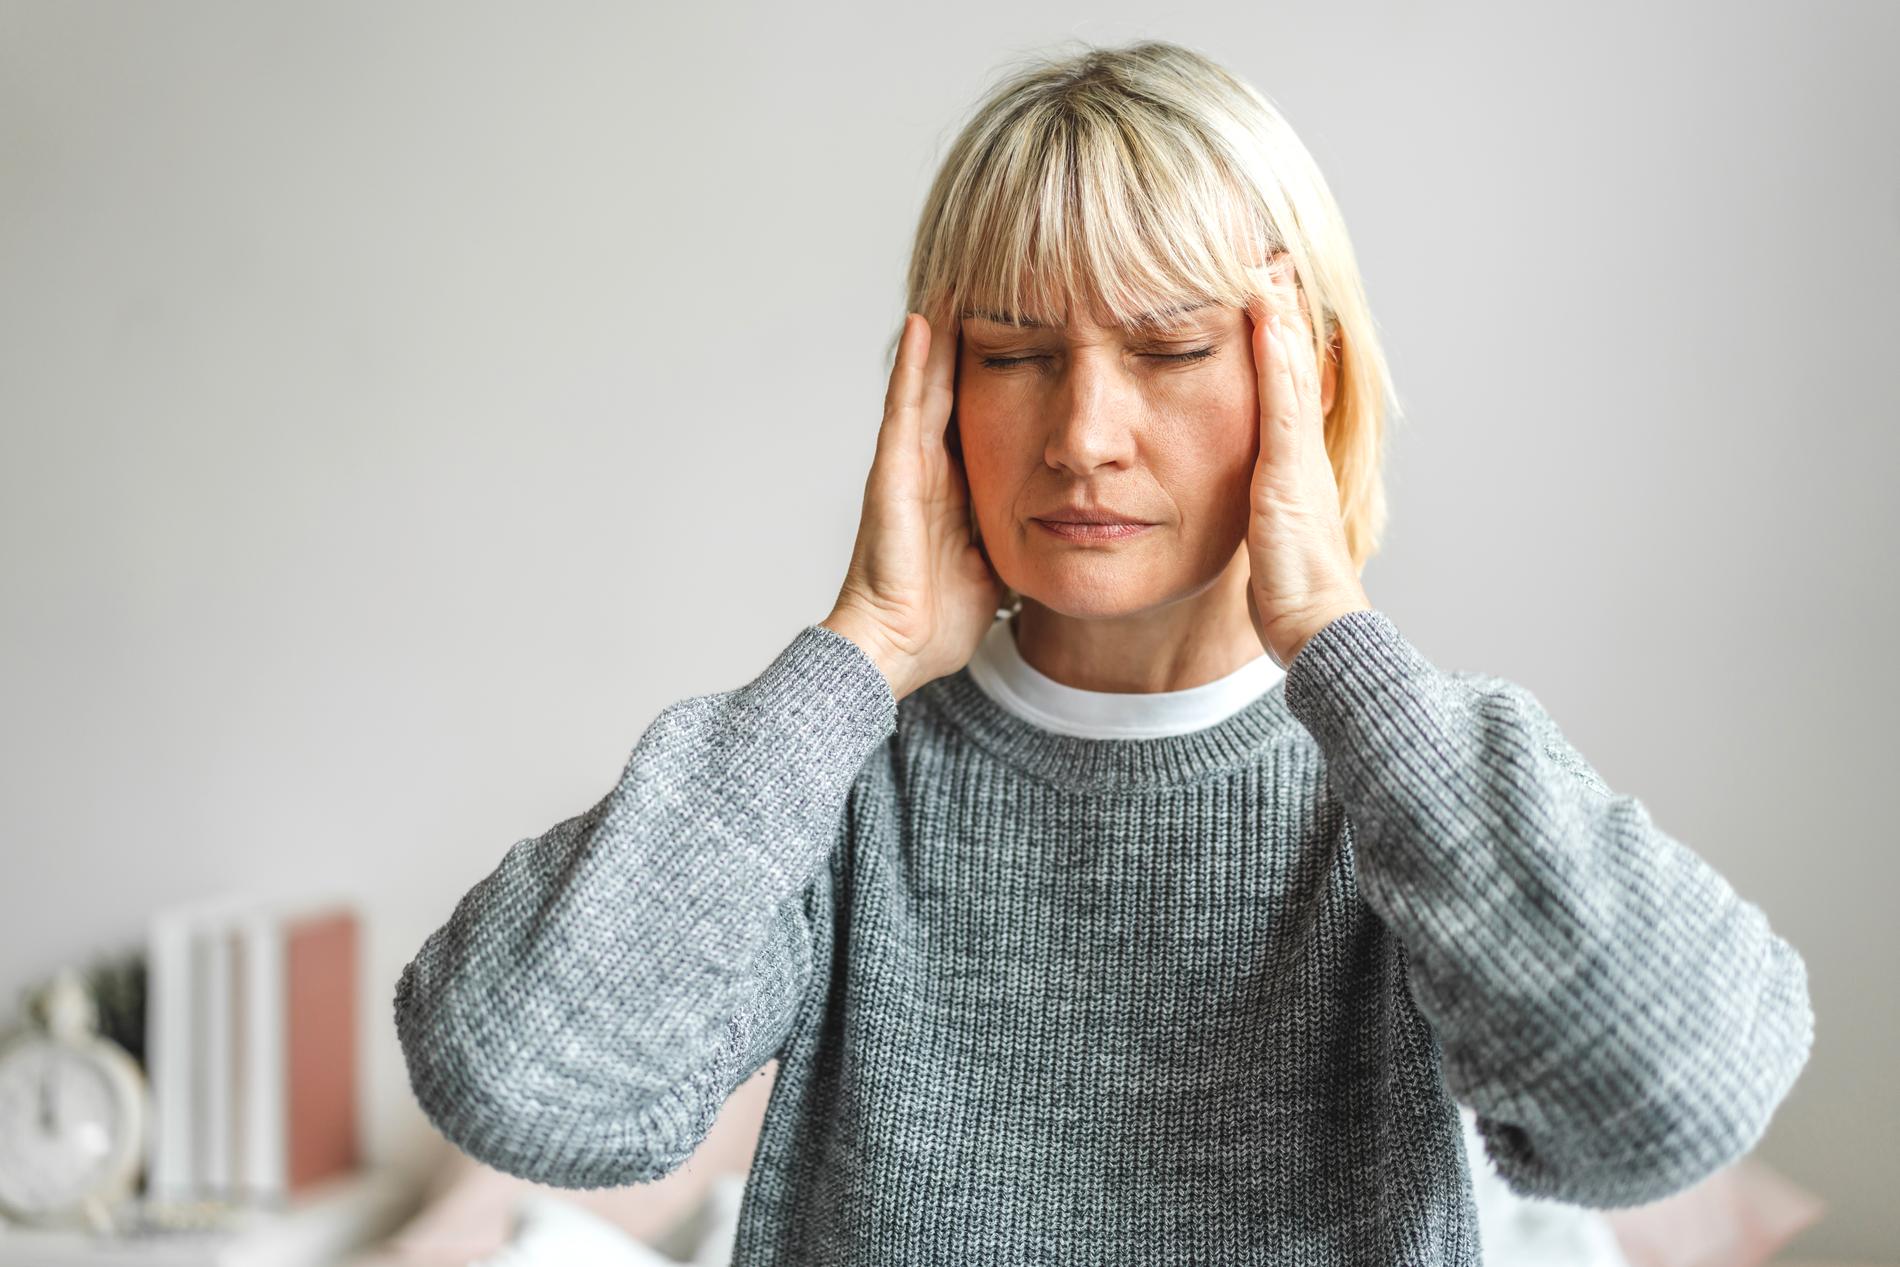 Lider du av huvudvärk? Alvedon Novum ger snabb smärtlindring inom 15 till 20 minuter. 